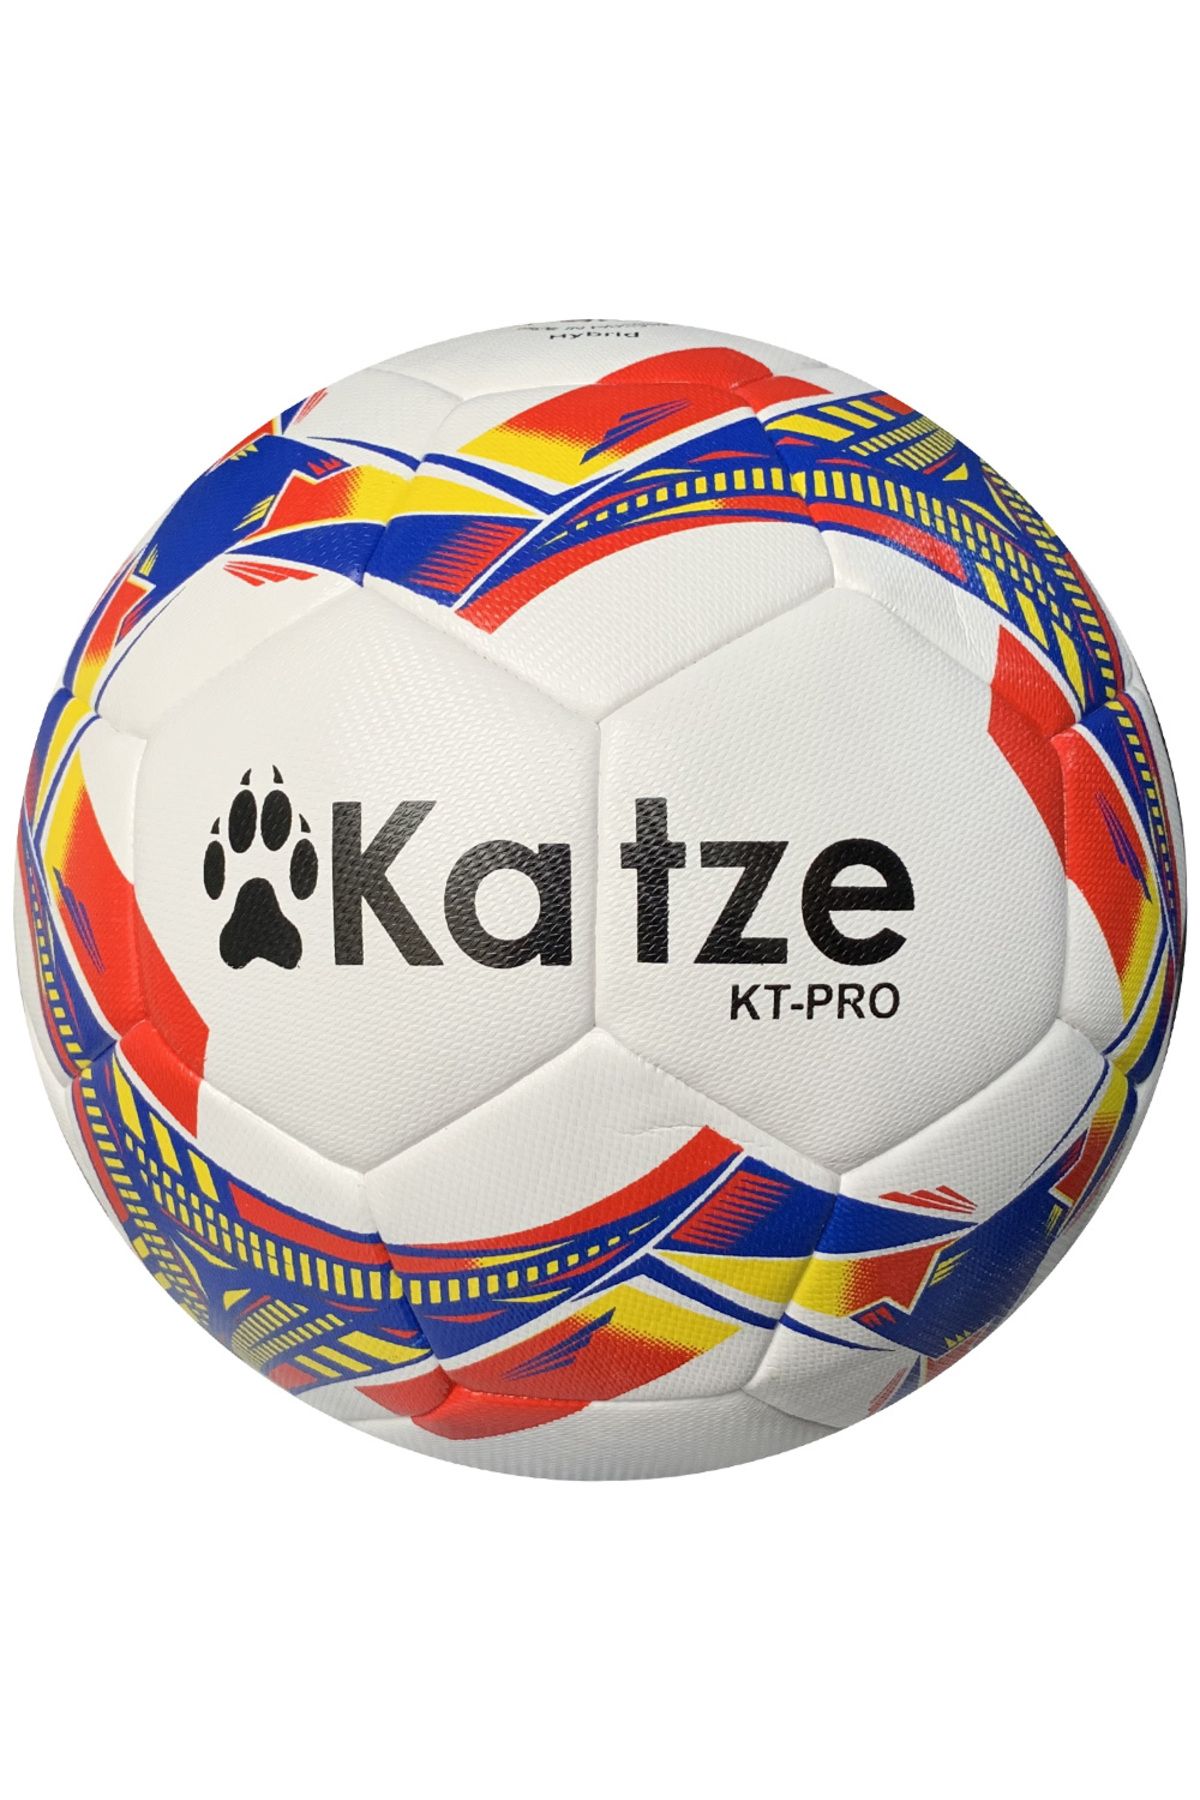 Katze KT Pro Hybrid Futbol Topu 5 Numara Mavi